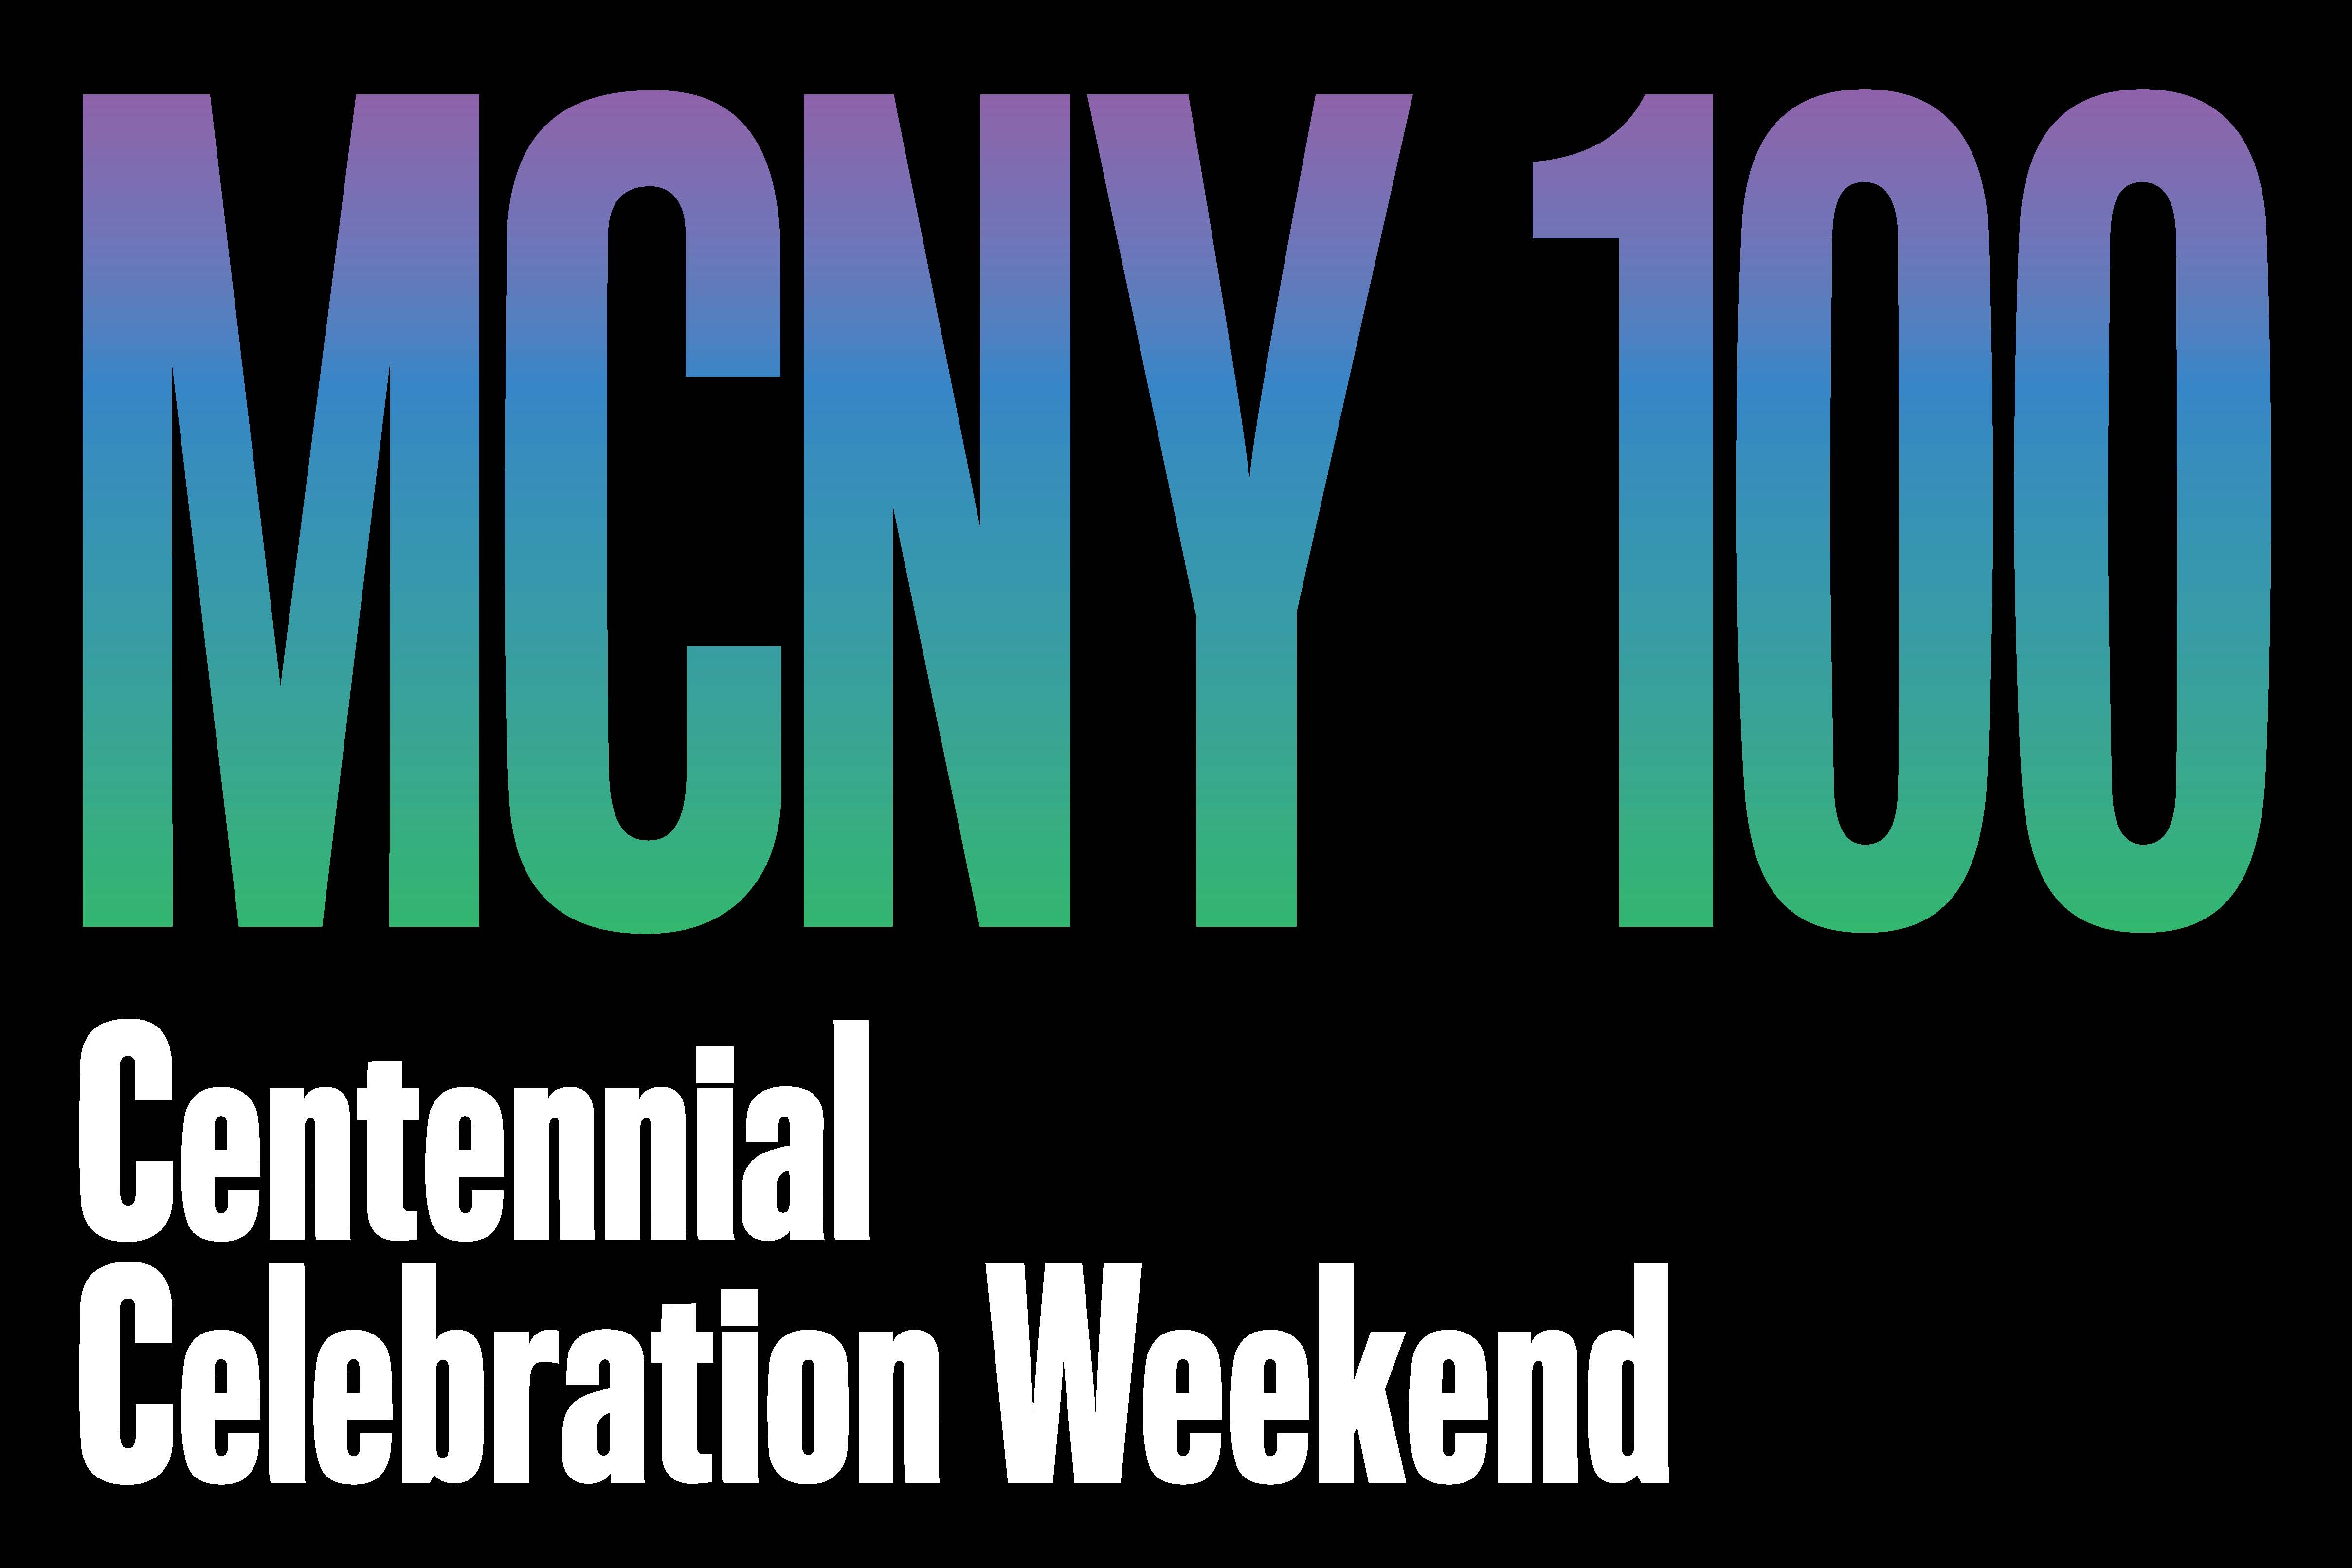 MCNY 100 以黑色背景上的蓝色/绿色渐变书写，副标题为白色百年庆典周末。